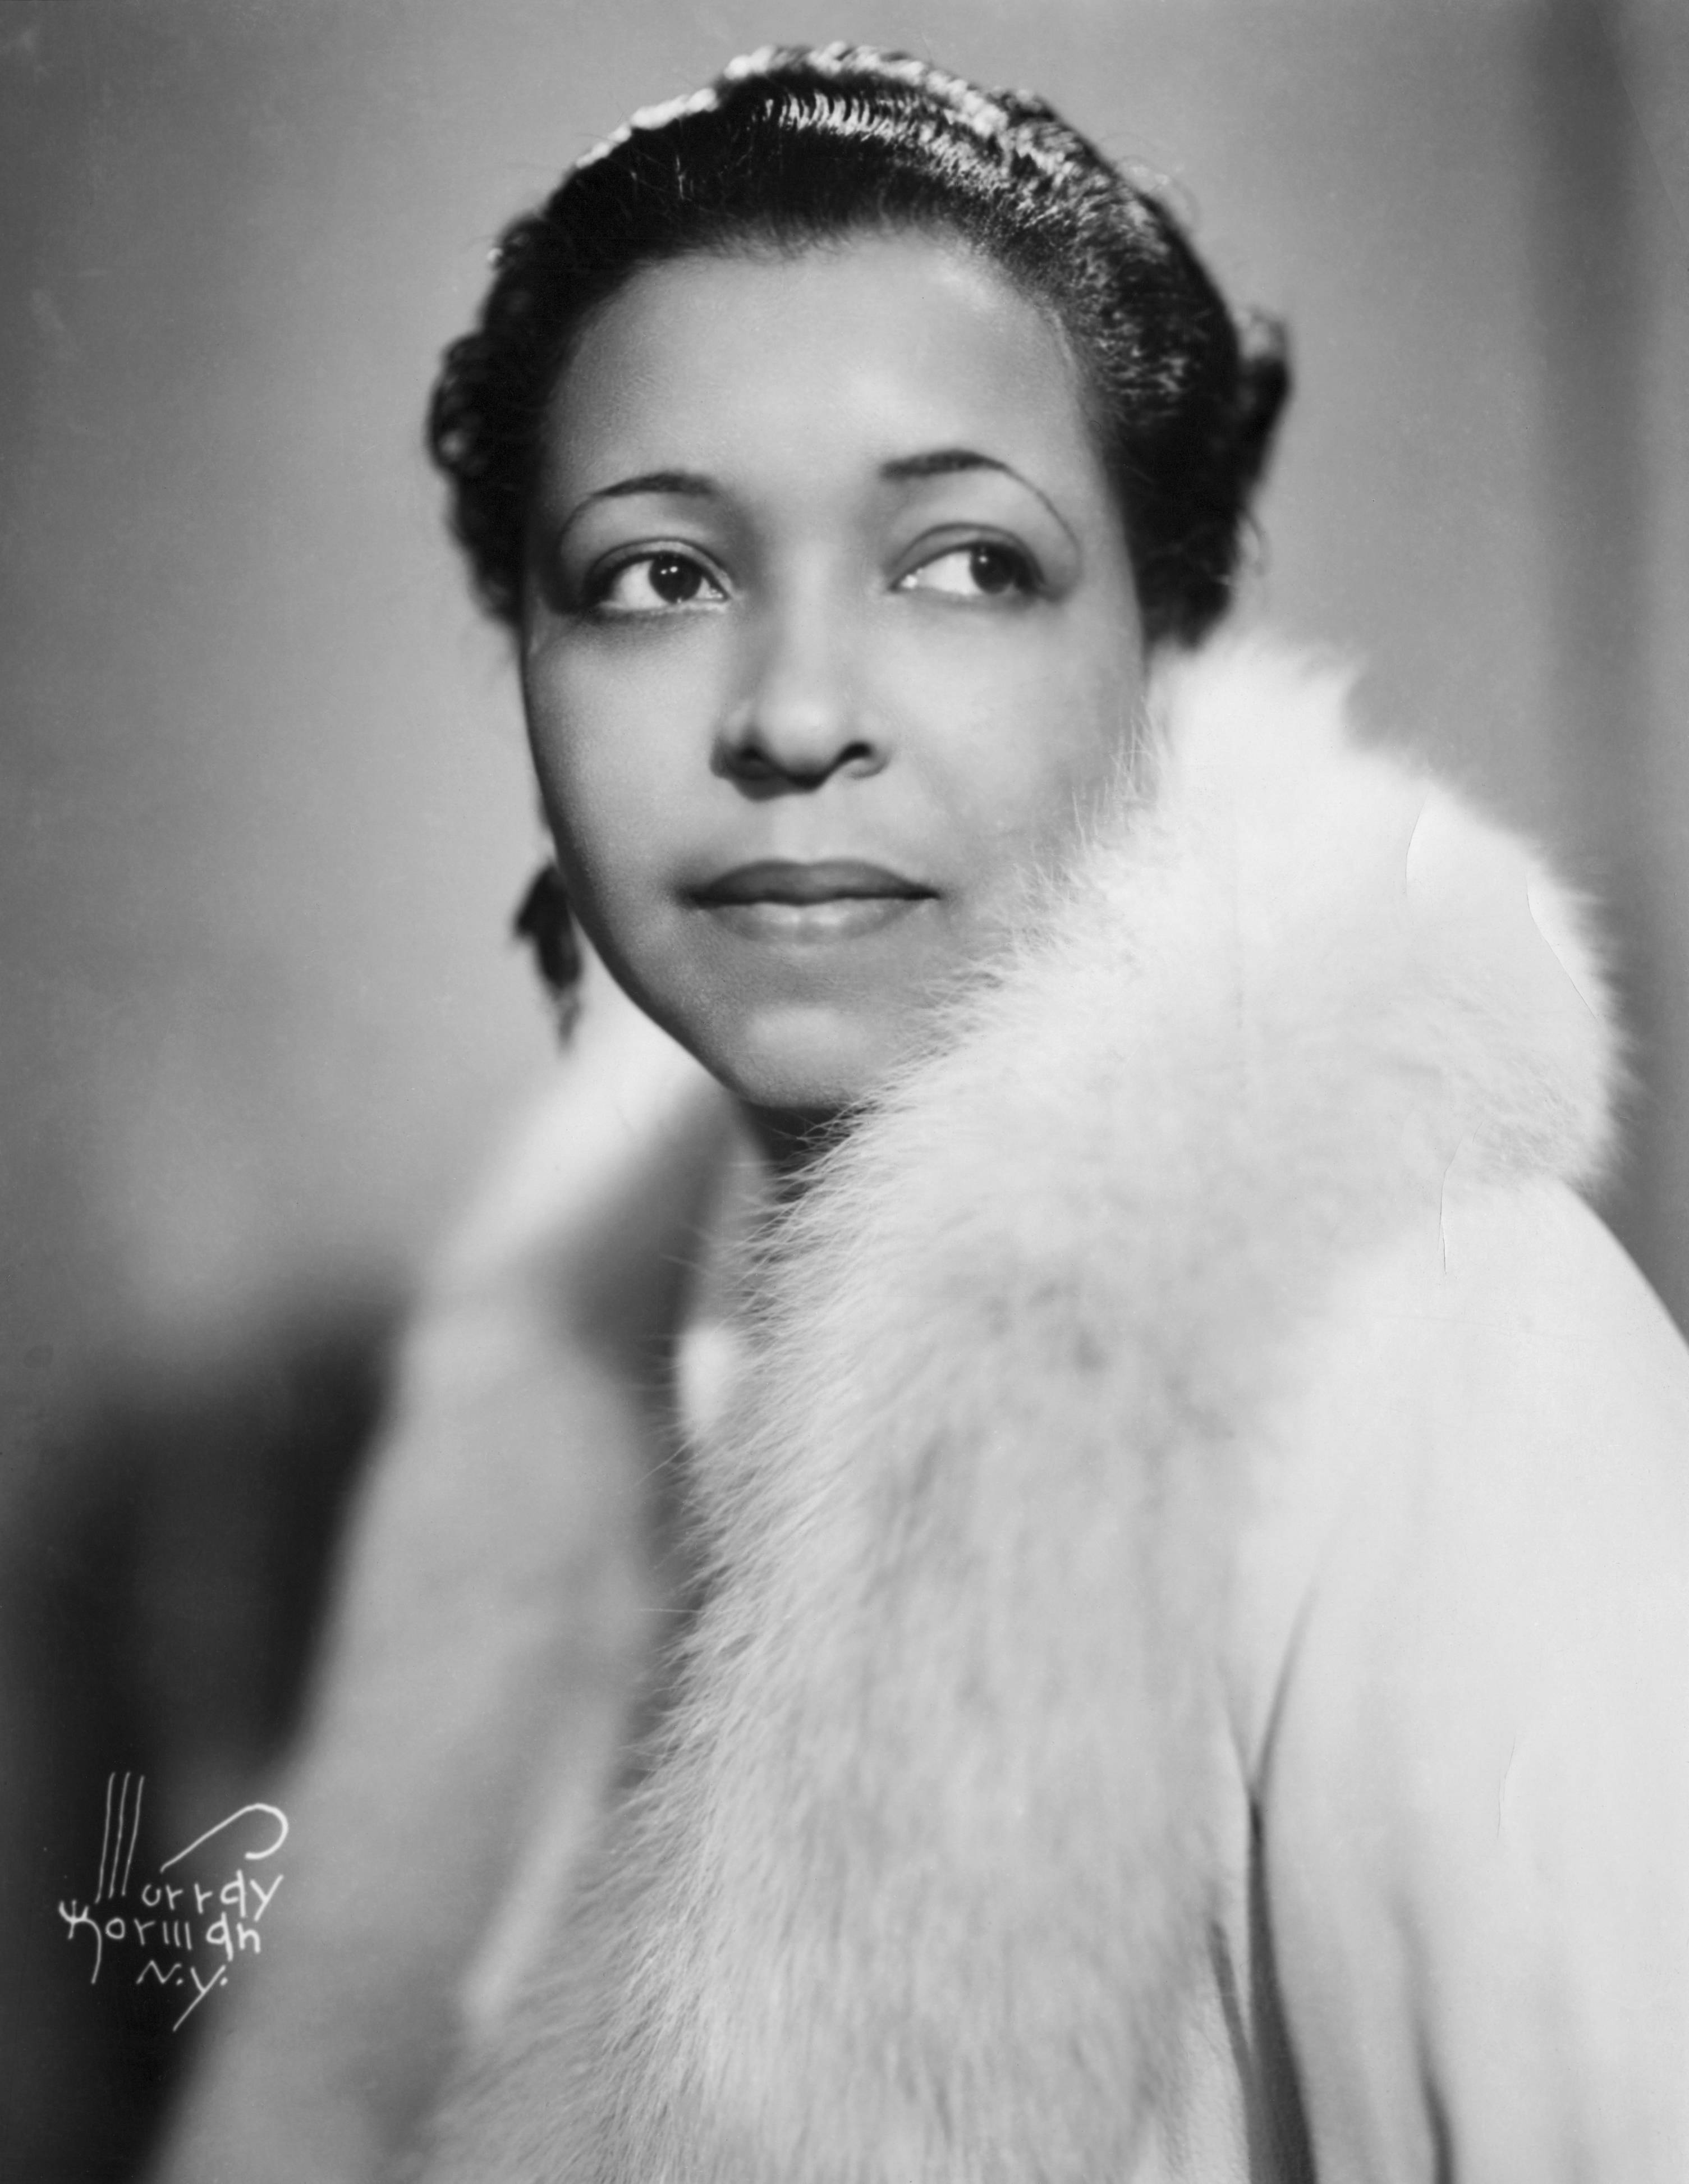 Baixe Papéis de Parede do Ethel Waters 3010 X 3891 | Wallpapers.com